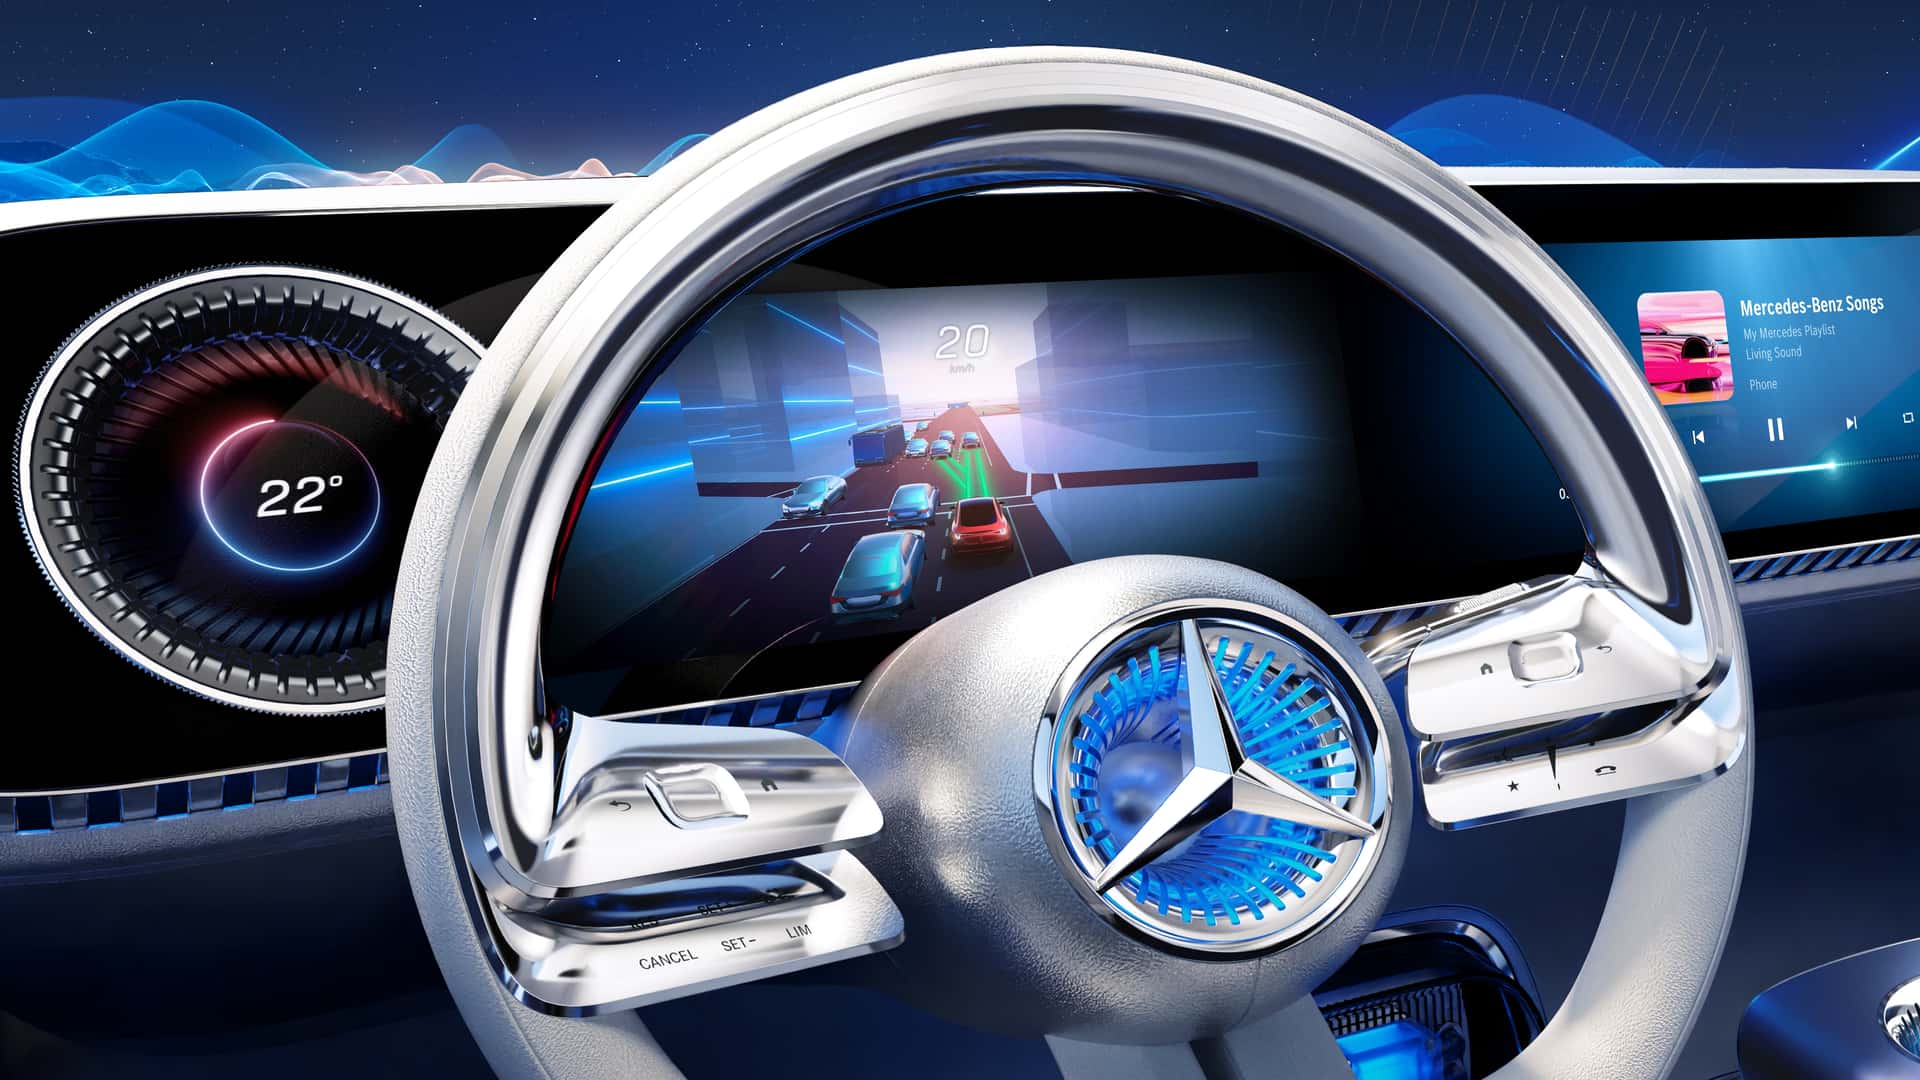 مرسيدس تكشف عن الجيل الجديد من نظام التشغيل لسياراتها بتقنيات مبتكرة جديدة 4